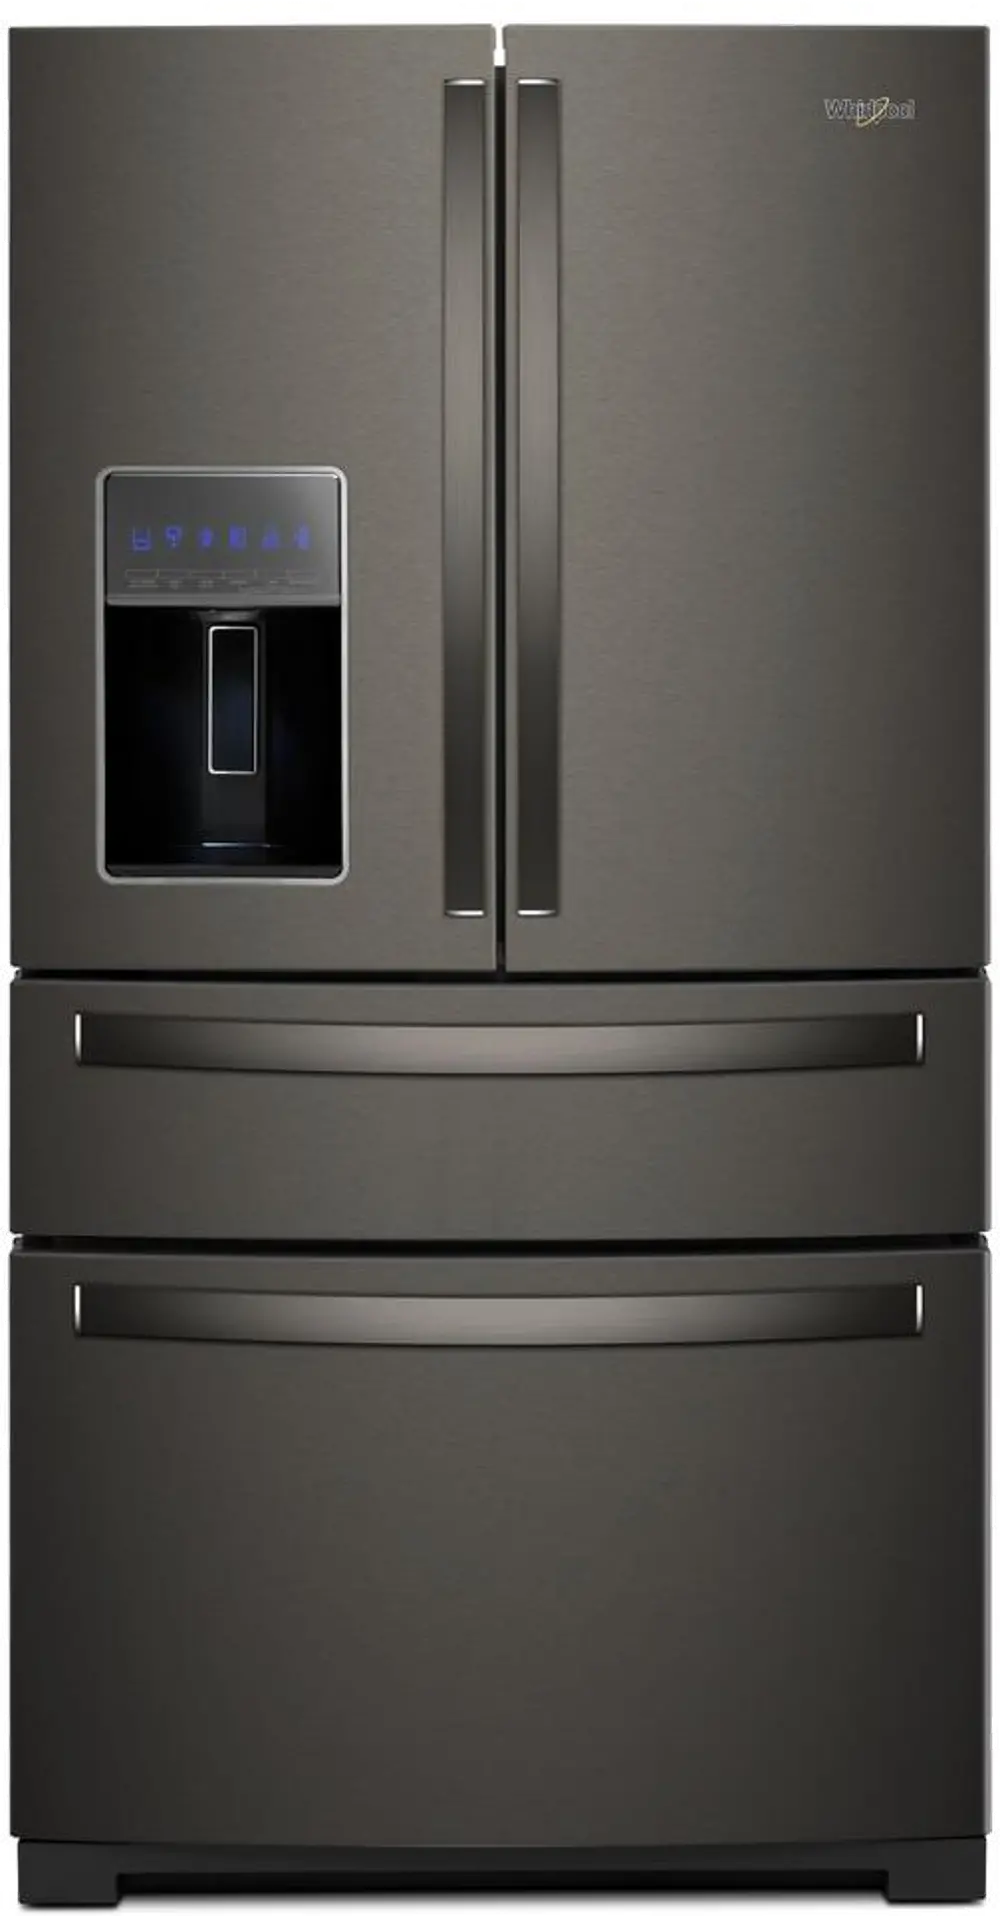 WRX986SIHV Whirlpool 26.2 cu ft 4 Door Refrigerator - Black Stainless Steel-1